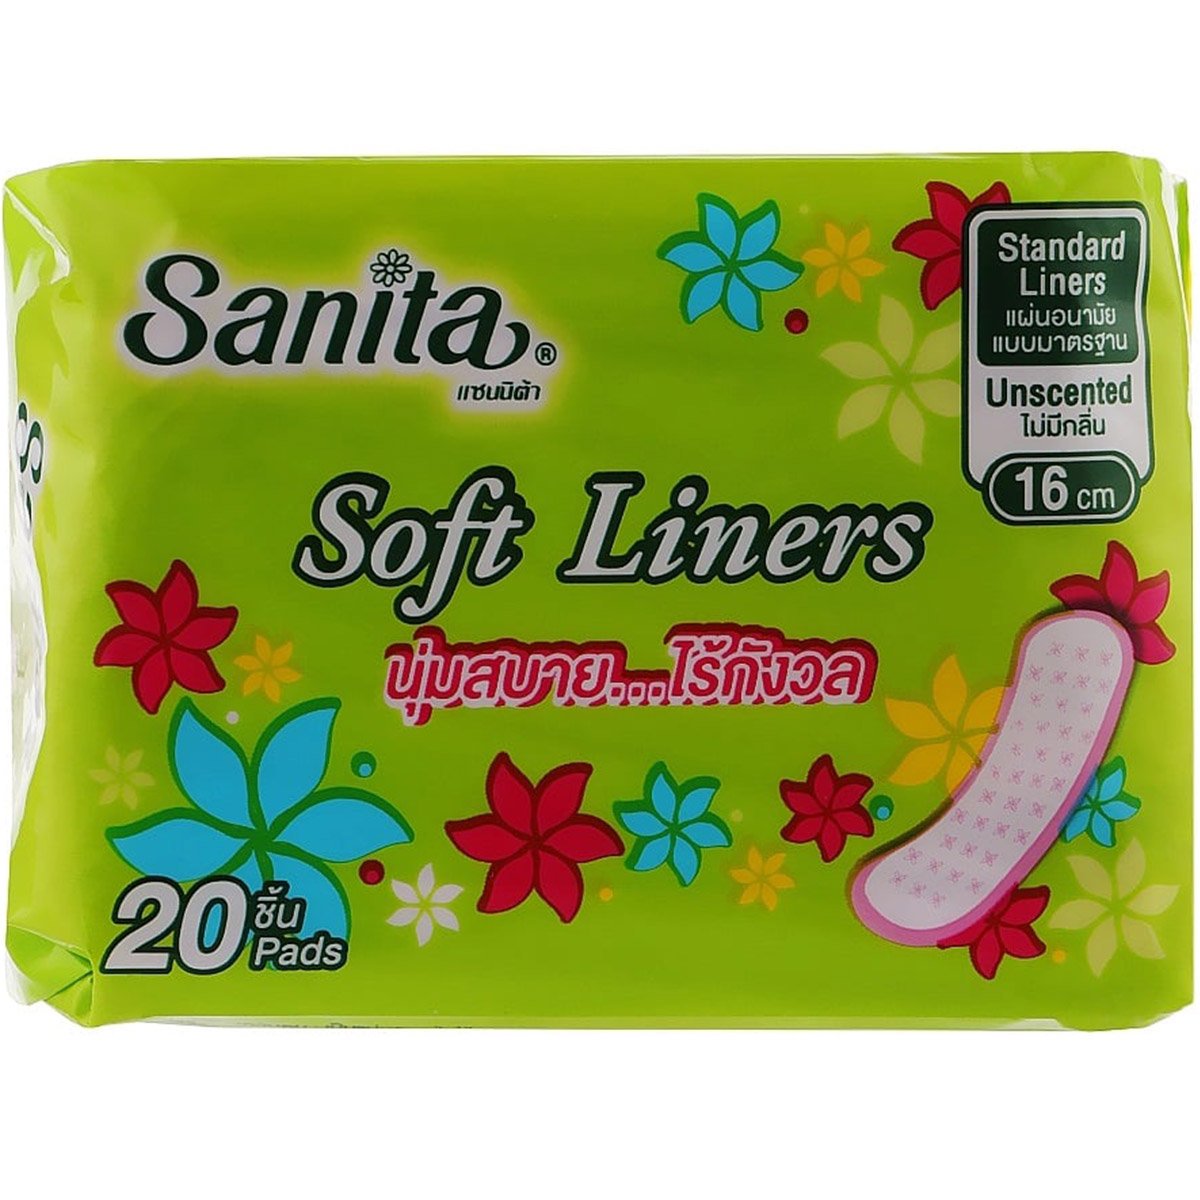 Ежедневные гигиенические прокладки Sanitaі Soft Liners 16 см 20 шт. - фото 1